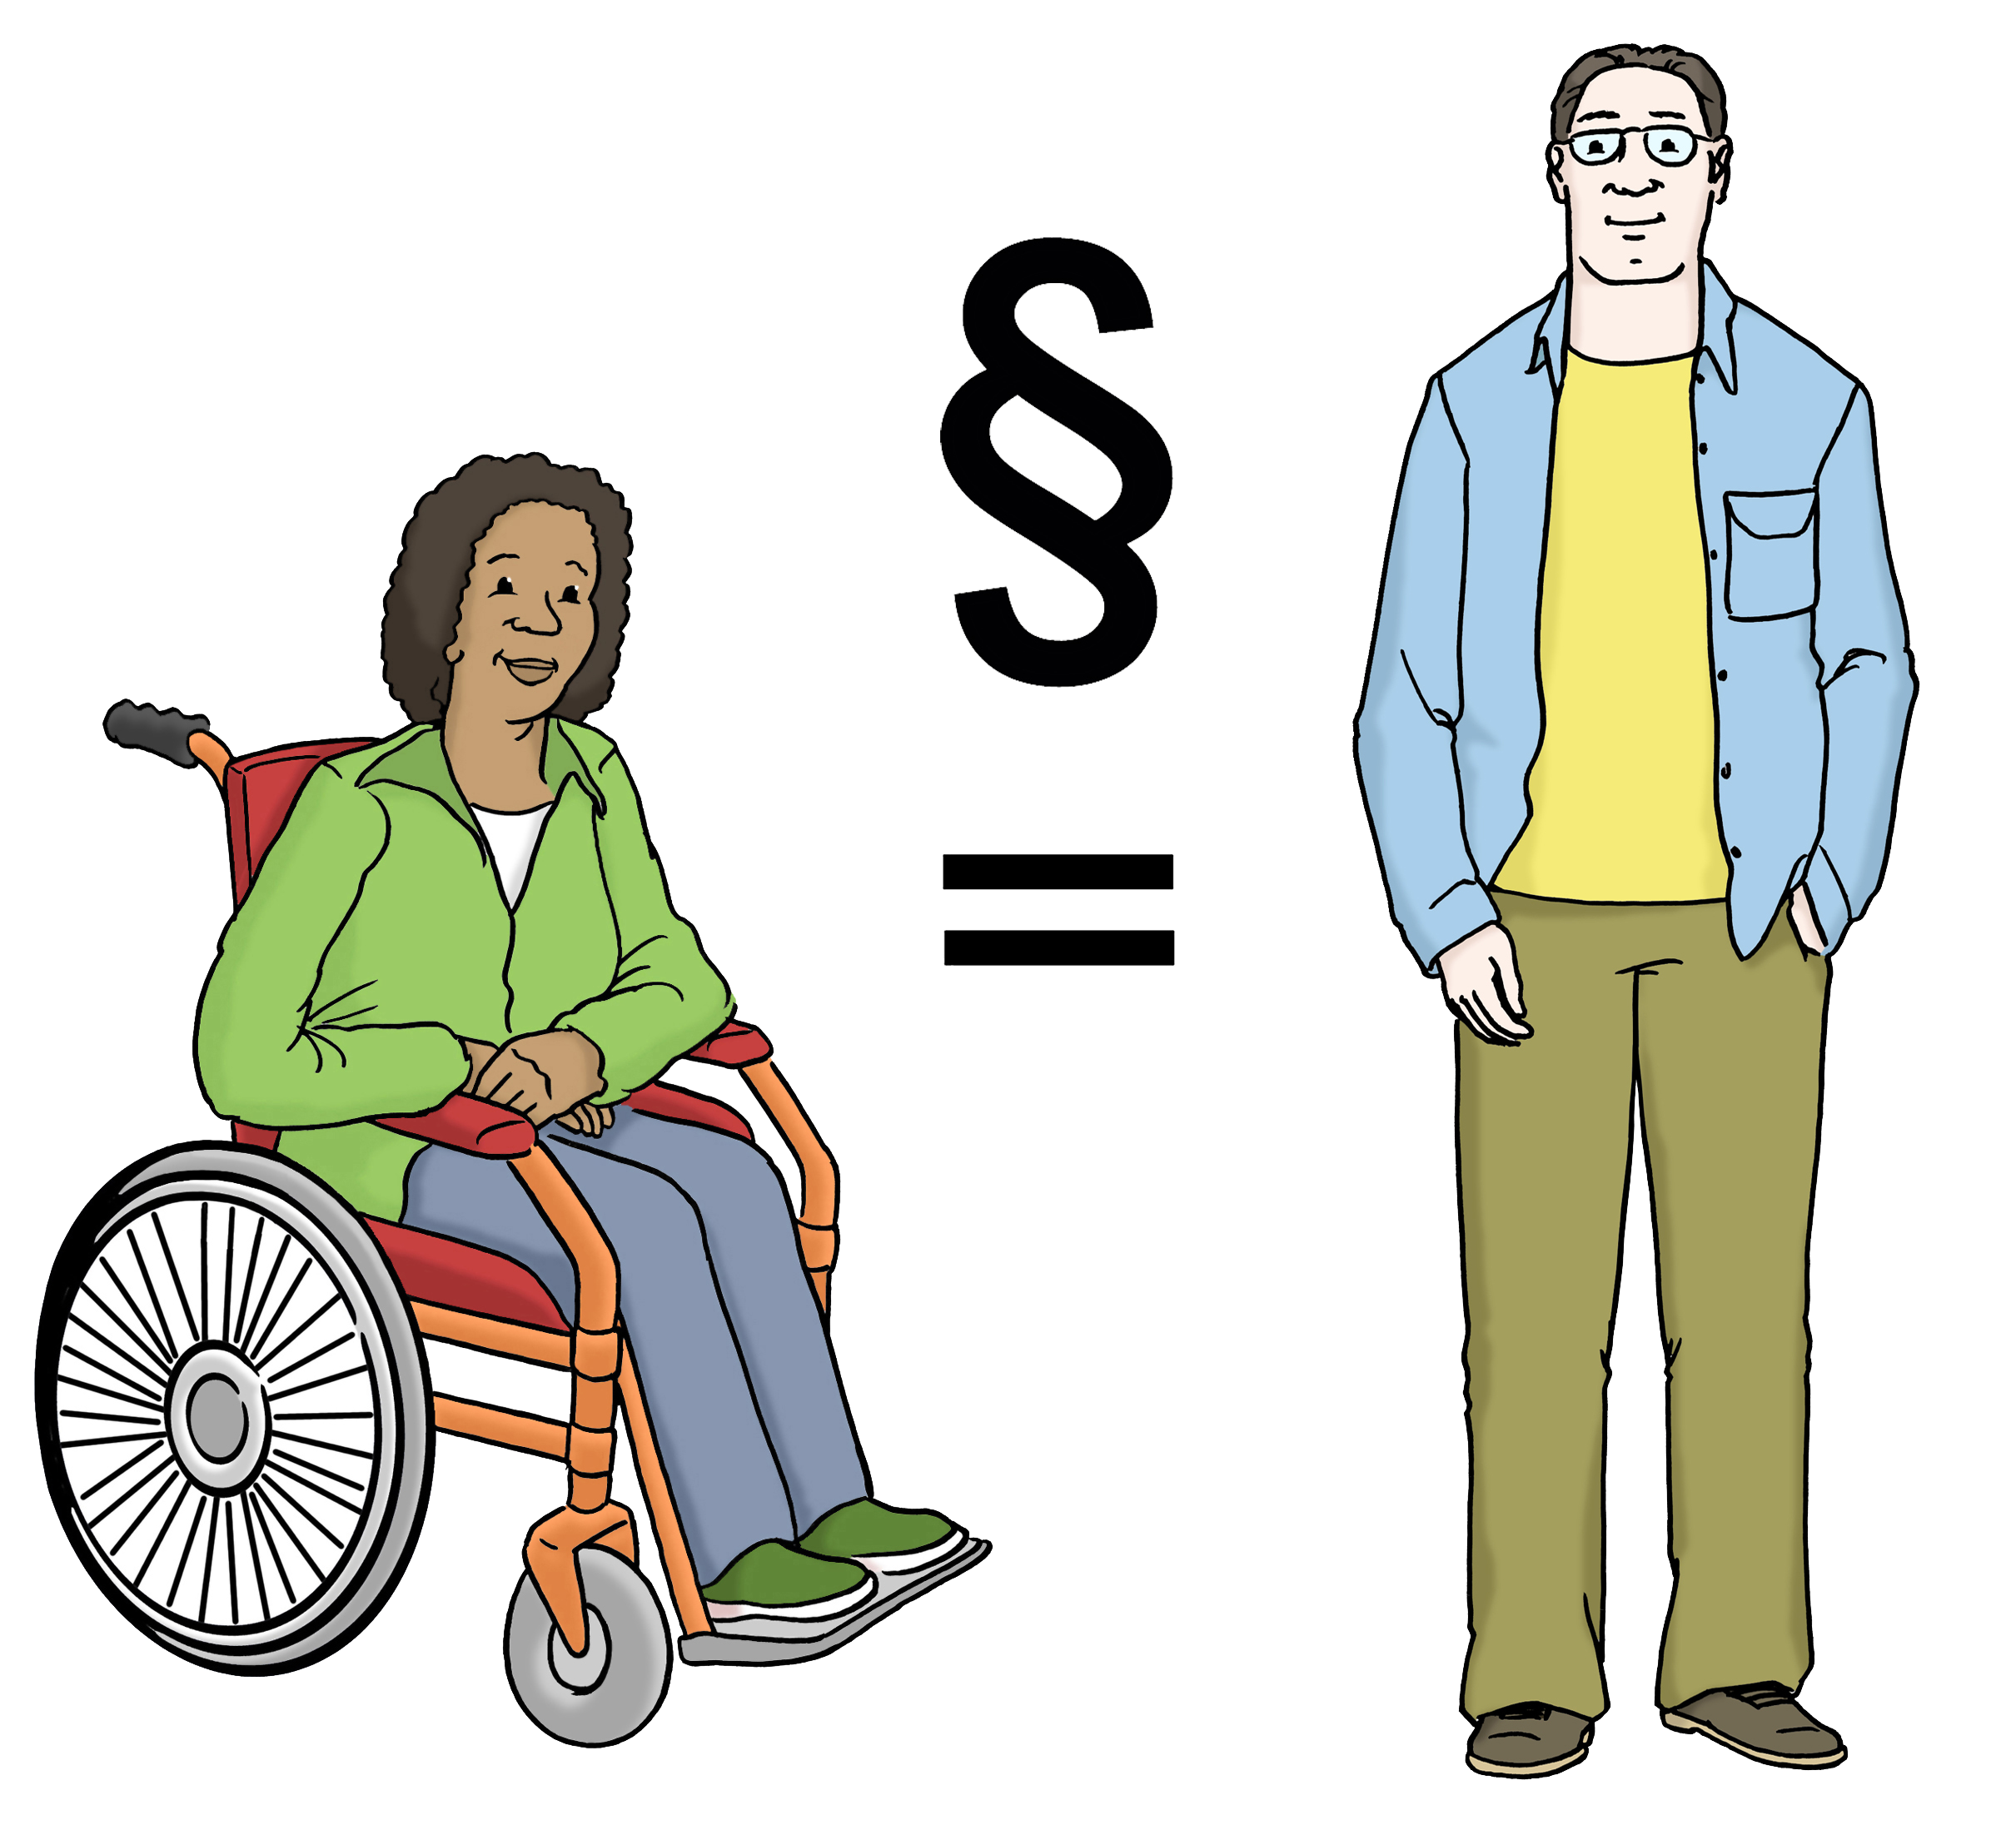 Zeichnung: Ein Mensch im Rollstuhl links, ein stehender Mensch rechts, in der Mitte ein Gleichzeichen mit einem Paragrafenzeichen.